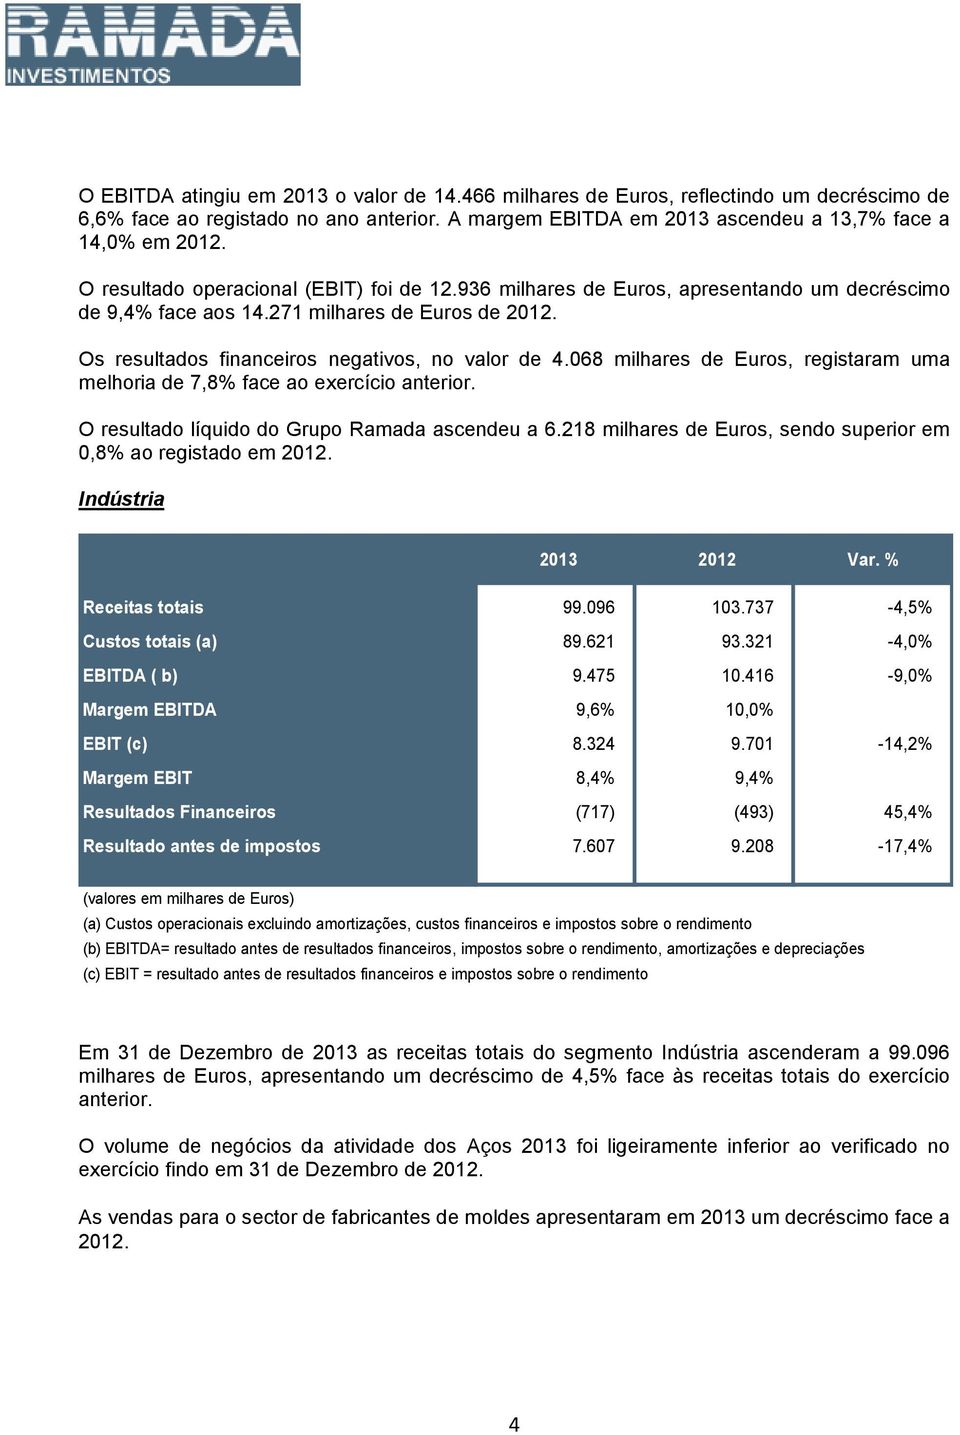 068 milhares de Euros, registaram uma melhoria de 7,8% face ao exercício anterior. O resultado líquido do Grupo Ramada ascendeu a 6.218 milhares de Euros, sendo superior em 0,8% ao registado em 2012.